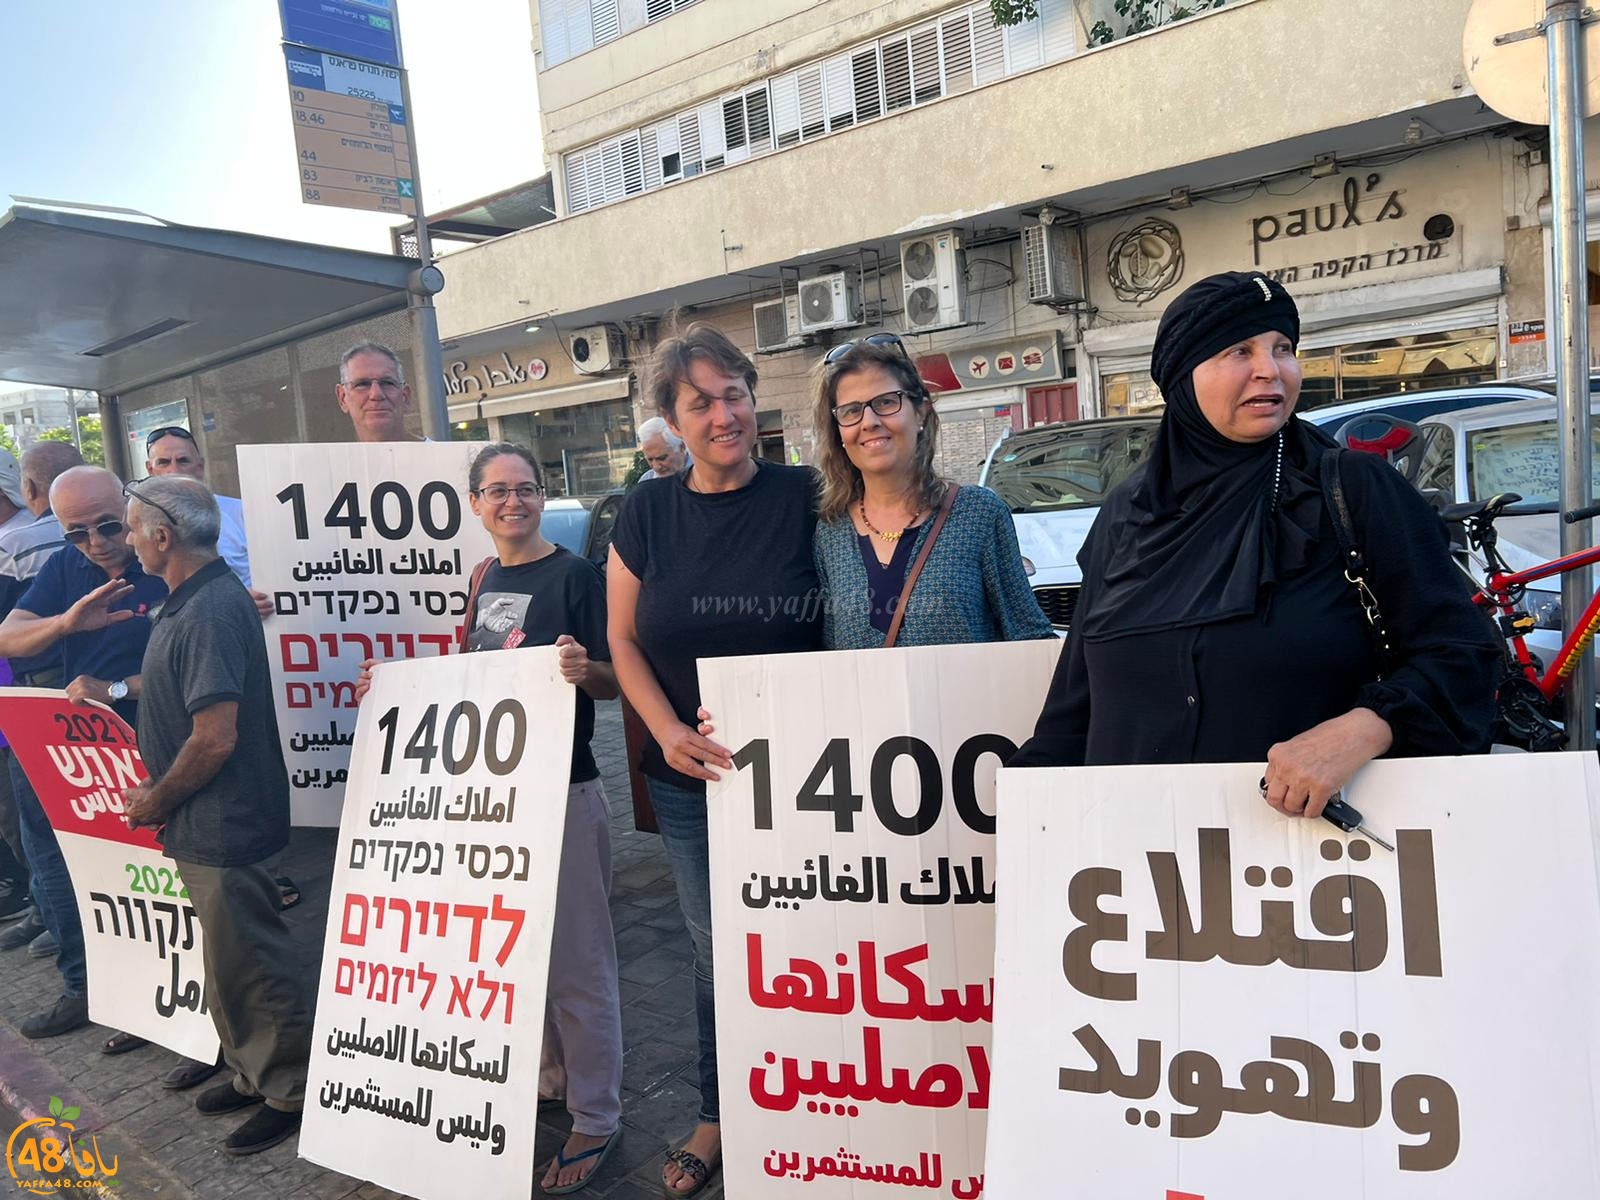 بالفيديو: وقفة احتجاجية لأهالي مدينة يافا ضد سياسة التهجير والتهويد